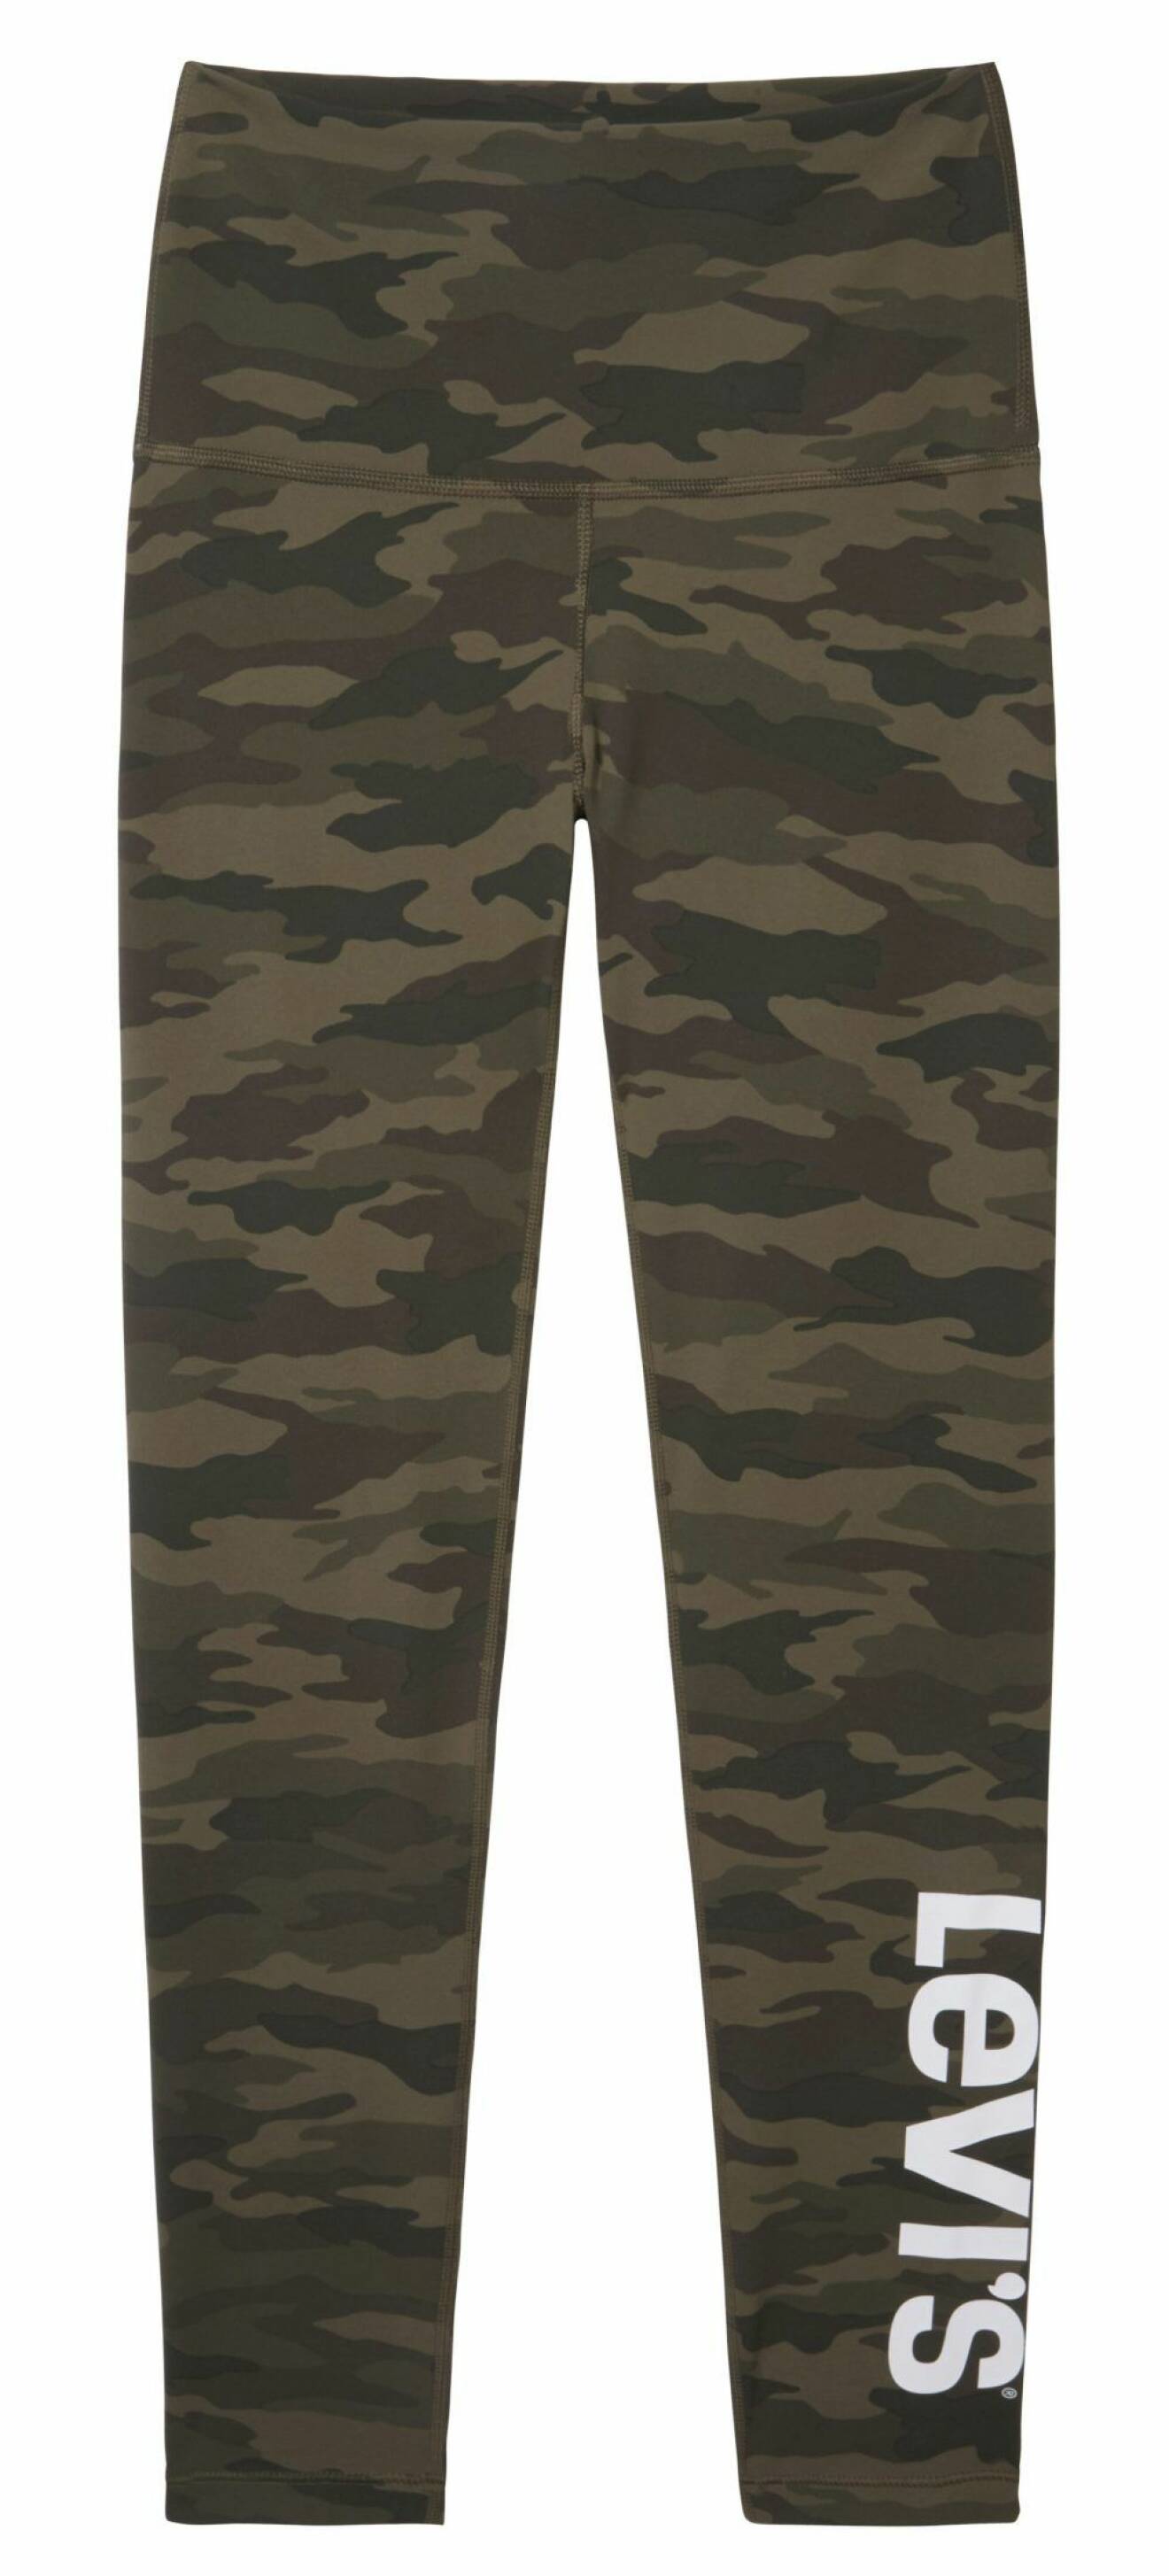 camouflagemönstrande leggings från Levi´s.